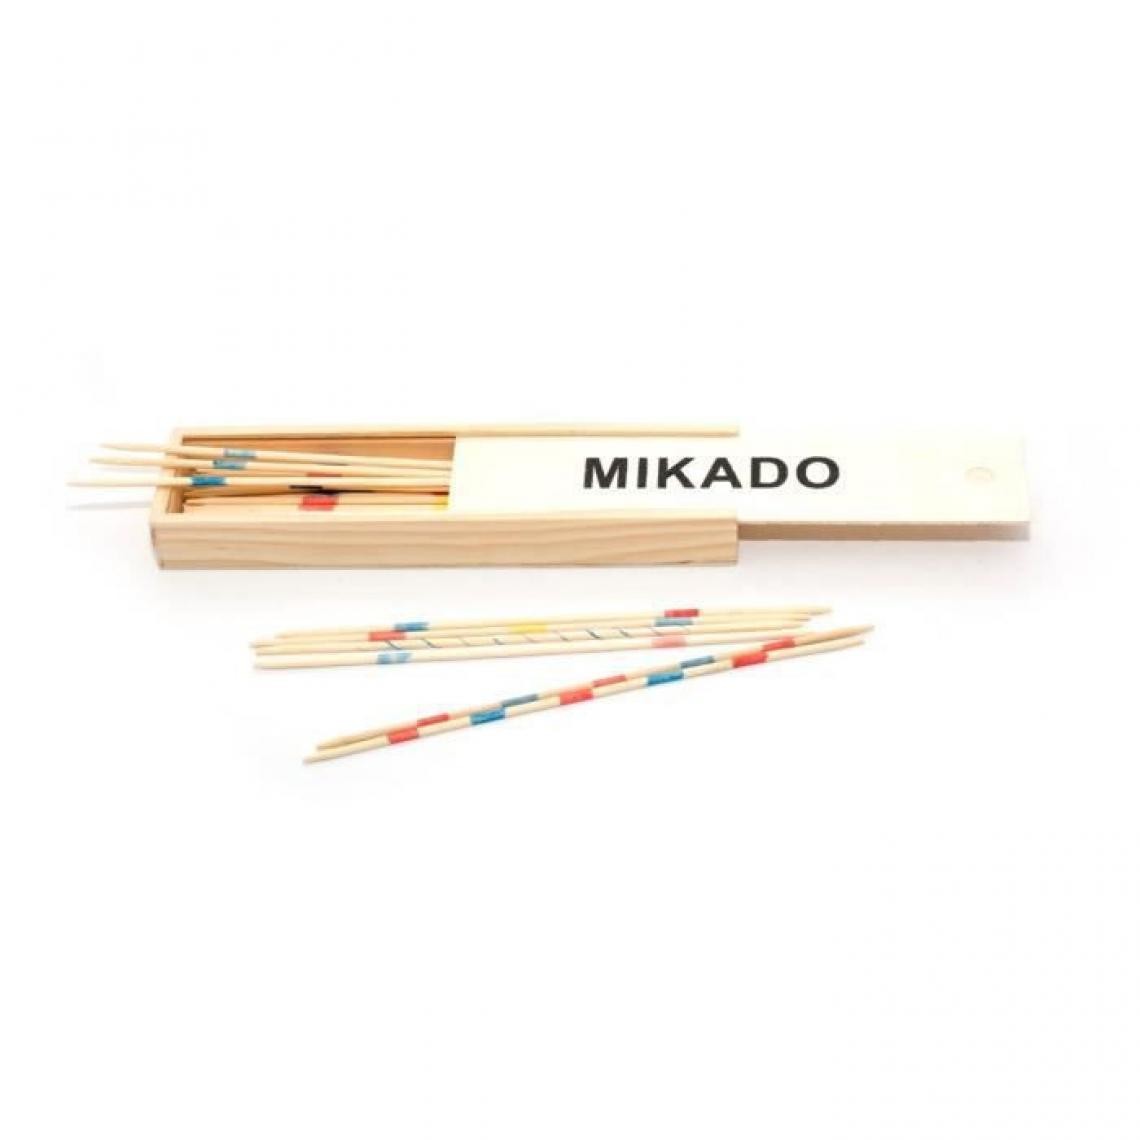 L'Arbre A Jouer - L'ARBRE A JOUER Mikado en bois 25 cm - Plumier en bois - Jeux de stratégie